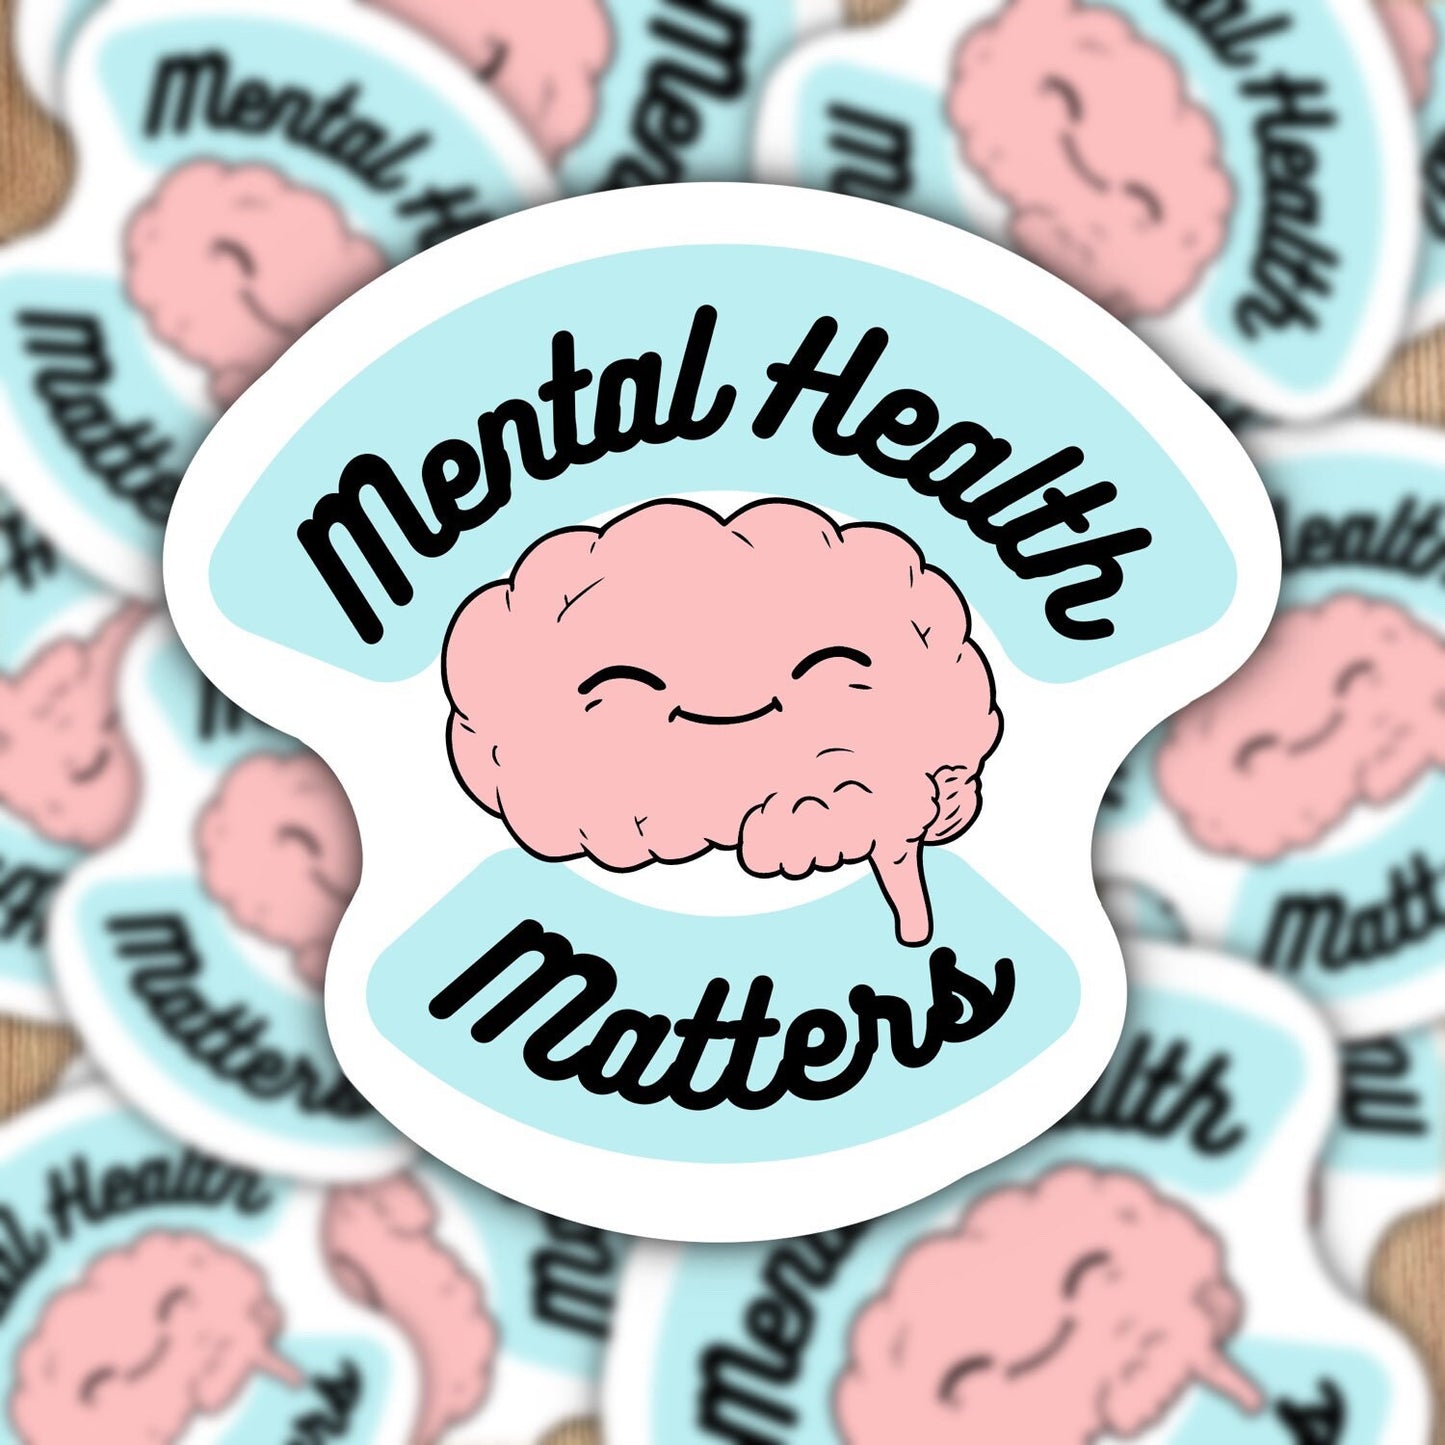 Mental Health Matters Waterproof sticker, Mental Health brain sticker